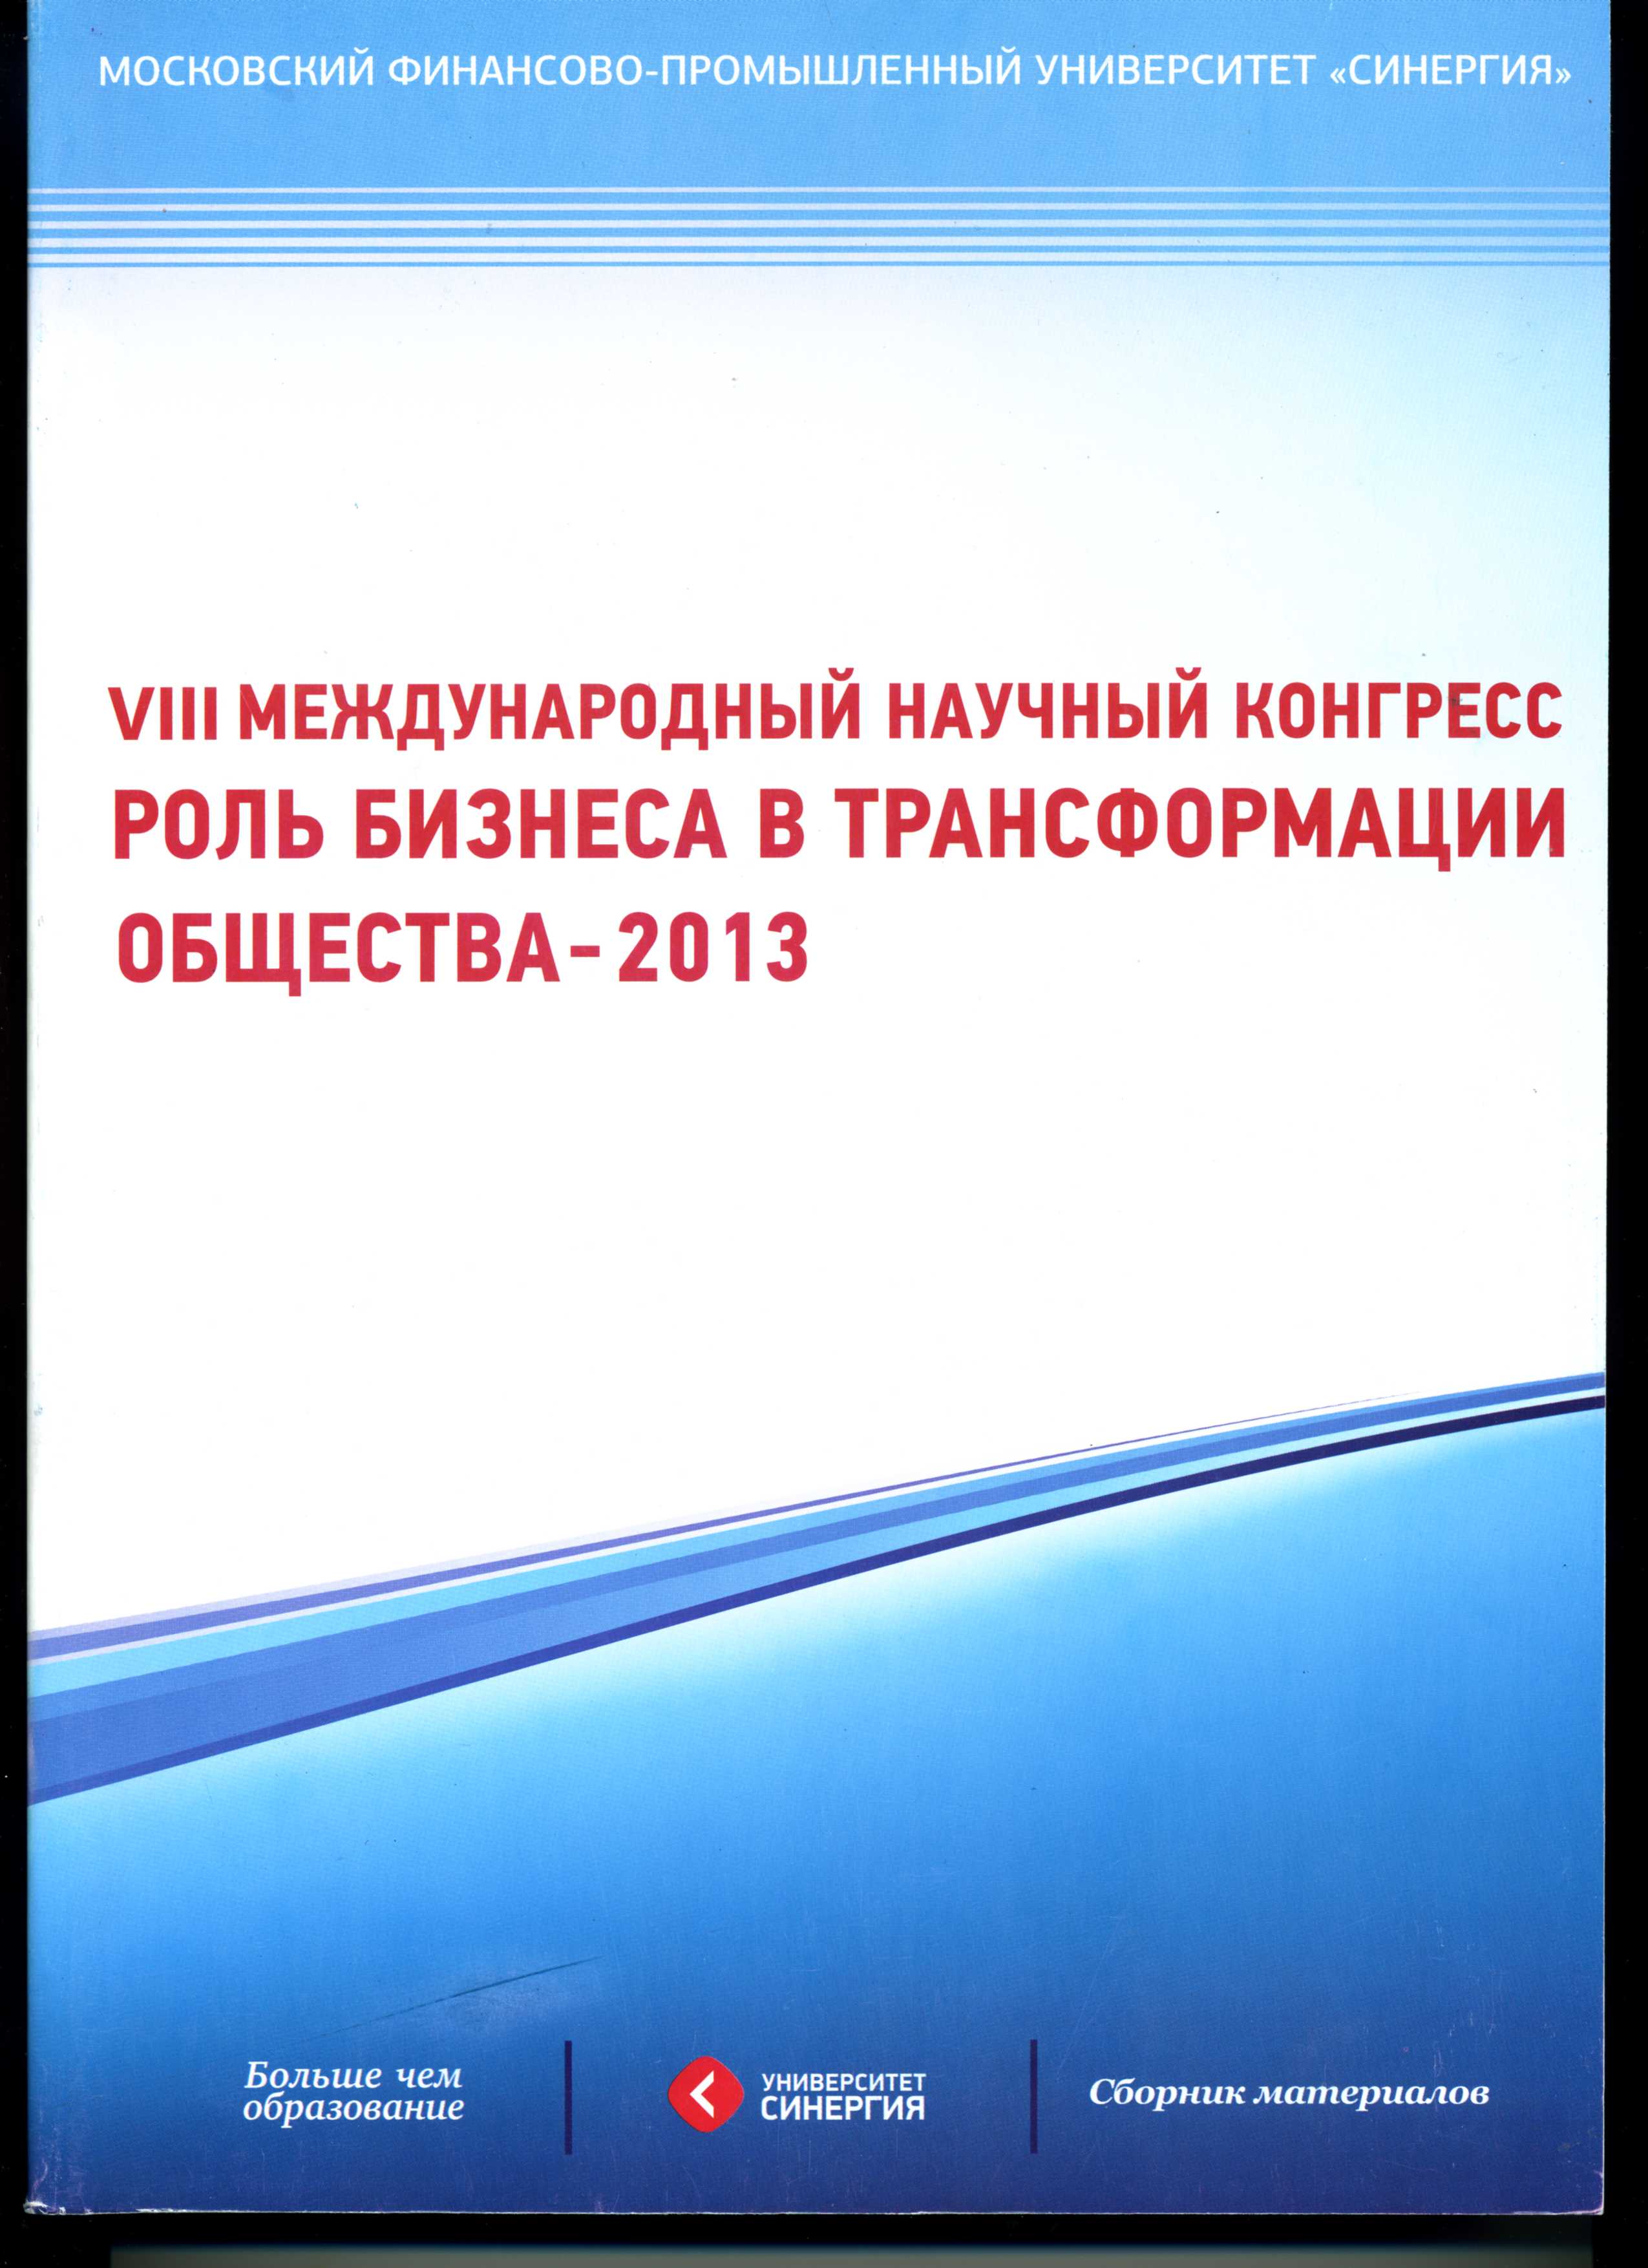 Сборник материалов VIII Международного научного конгресса "Роль бизнеса в трансформации общества - 2013"